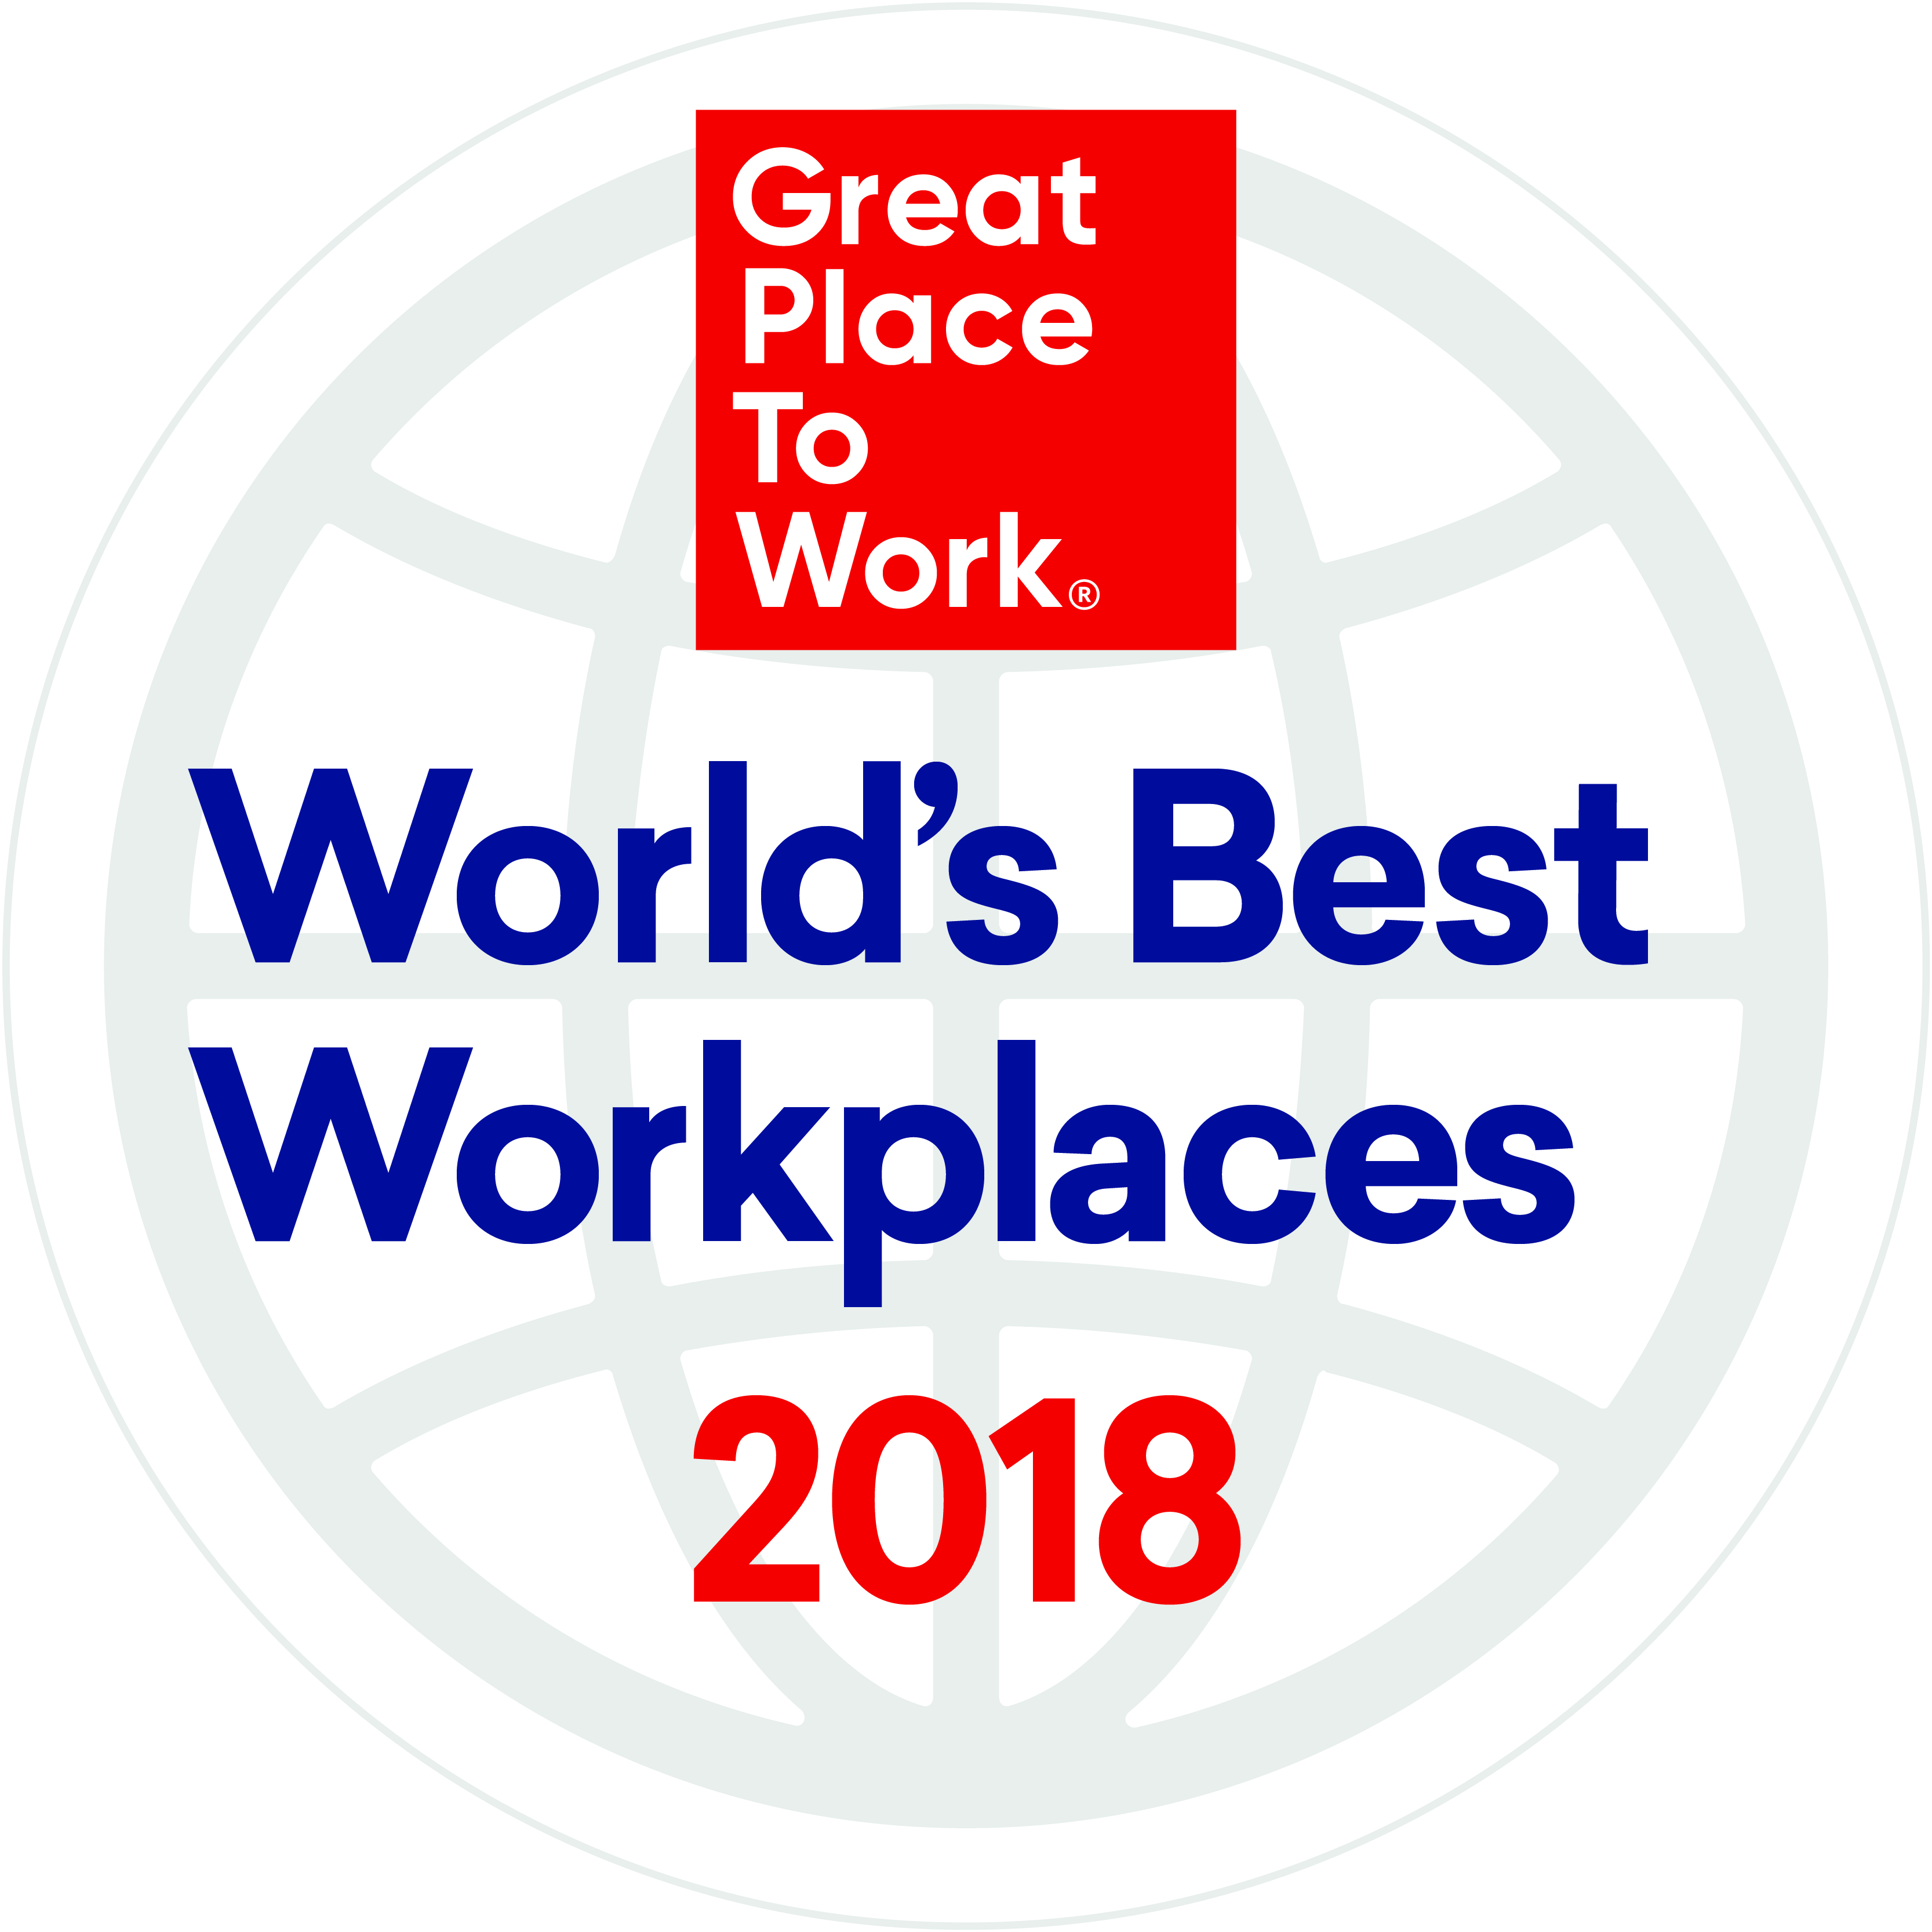  Palmarès Best Workplaces Monde 2018 : 25 entreprises internationales se distinguent